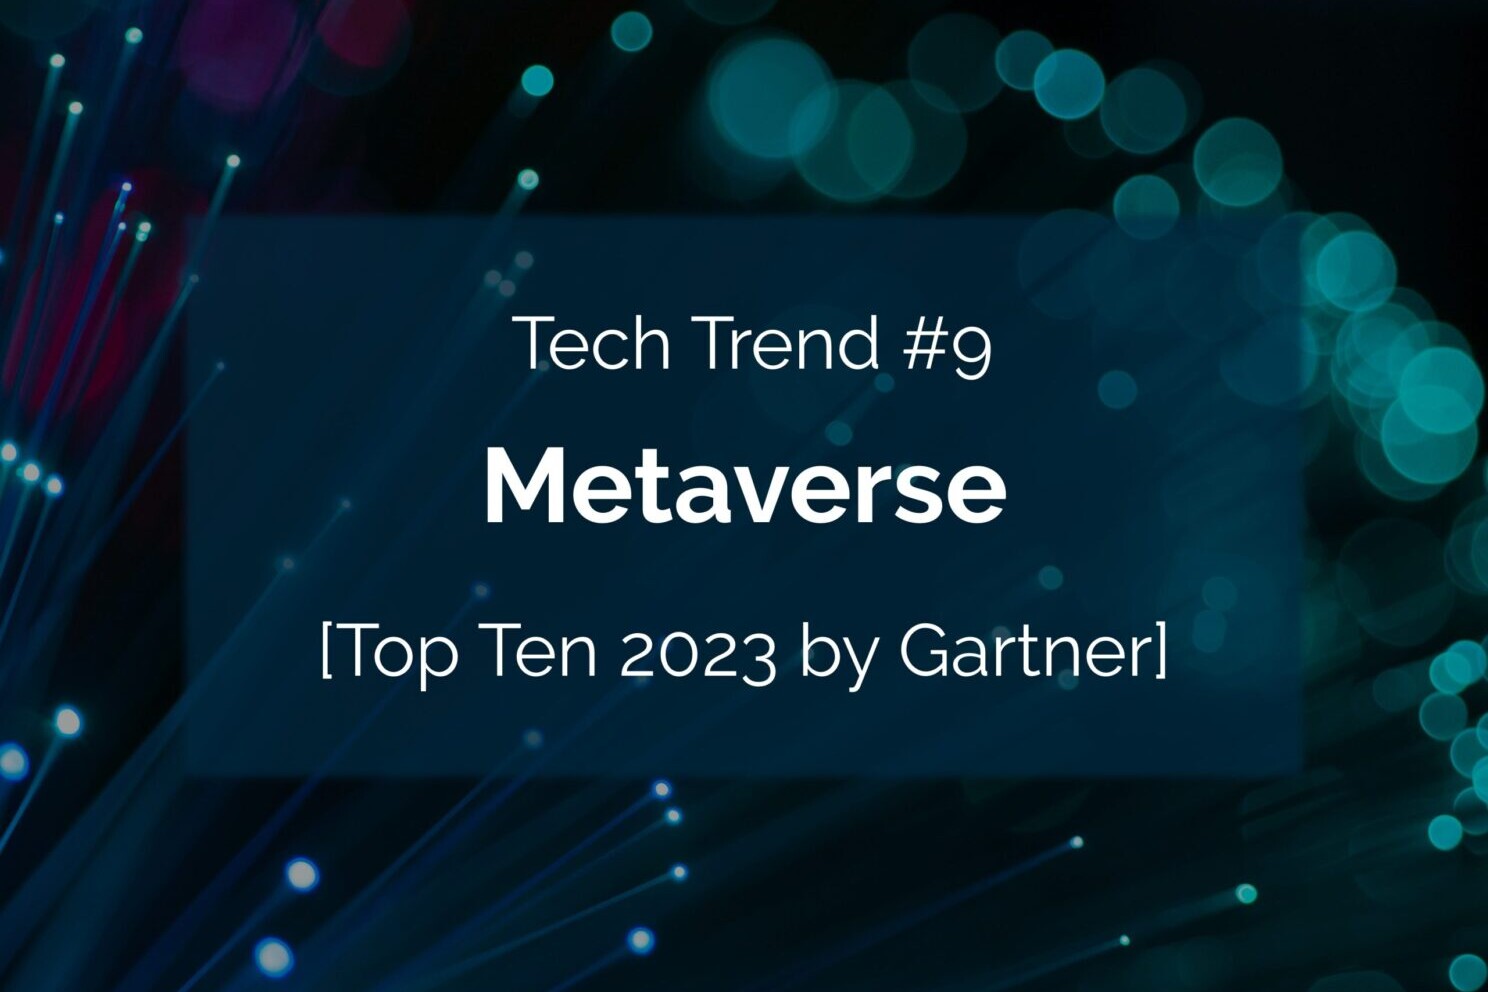 Einer der zehn Top-Tech-Trends des Jahres 2020 laut Garner ist das Metaverse.